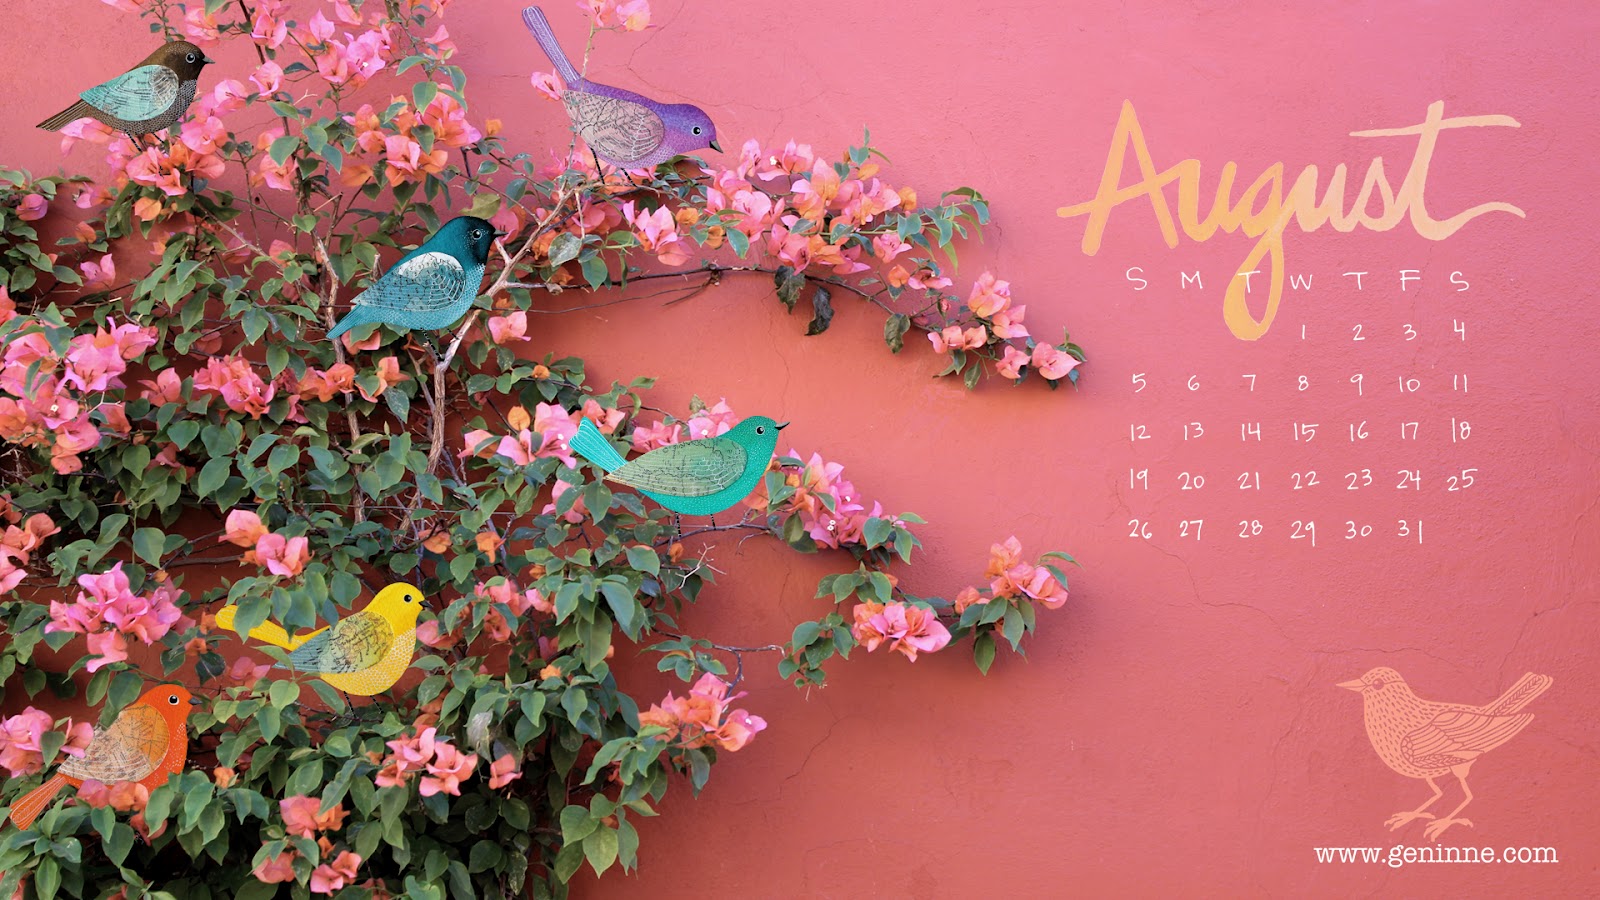 Consider The Lillies: Free August desktop calendar